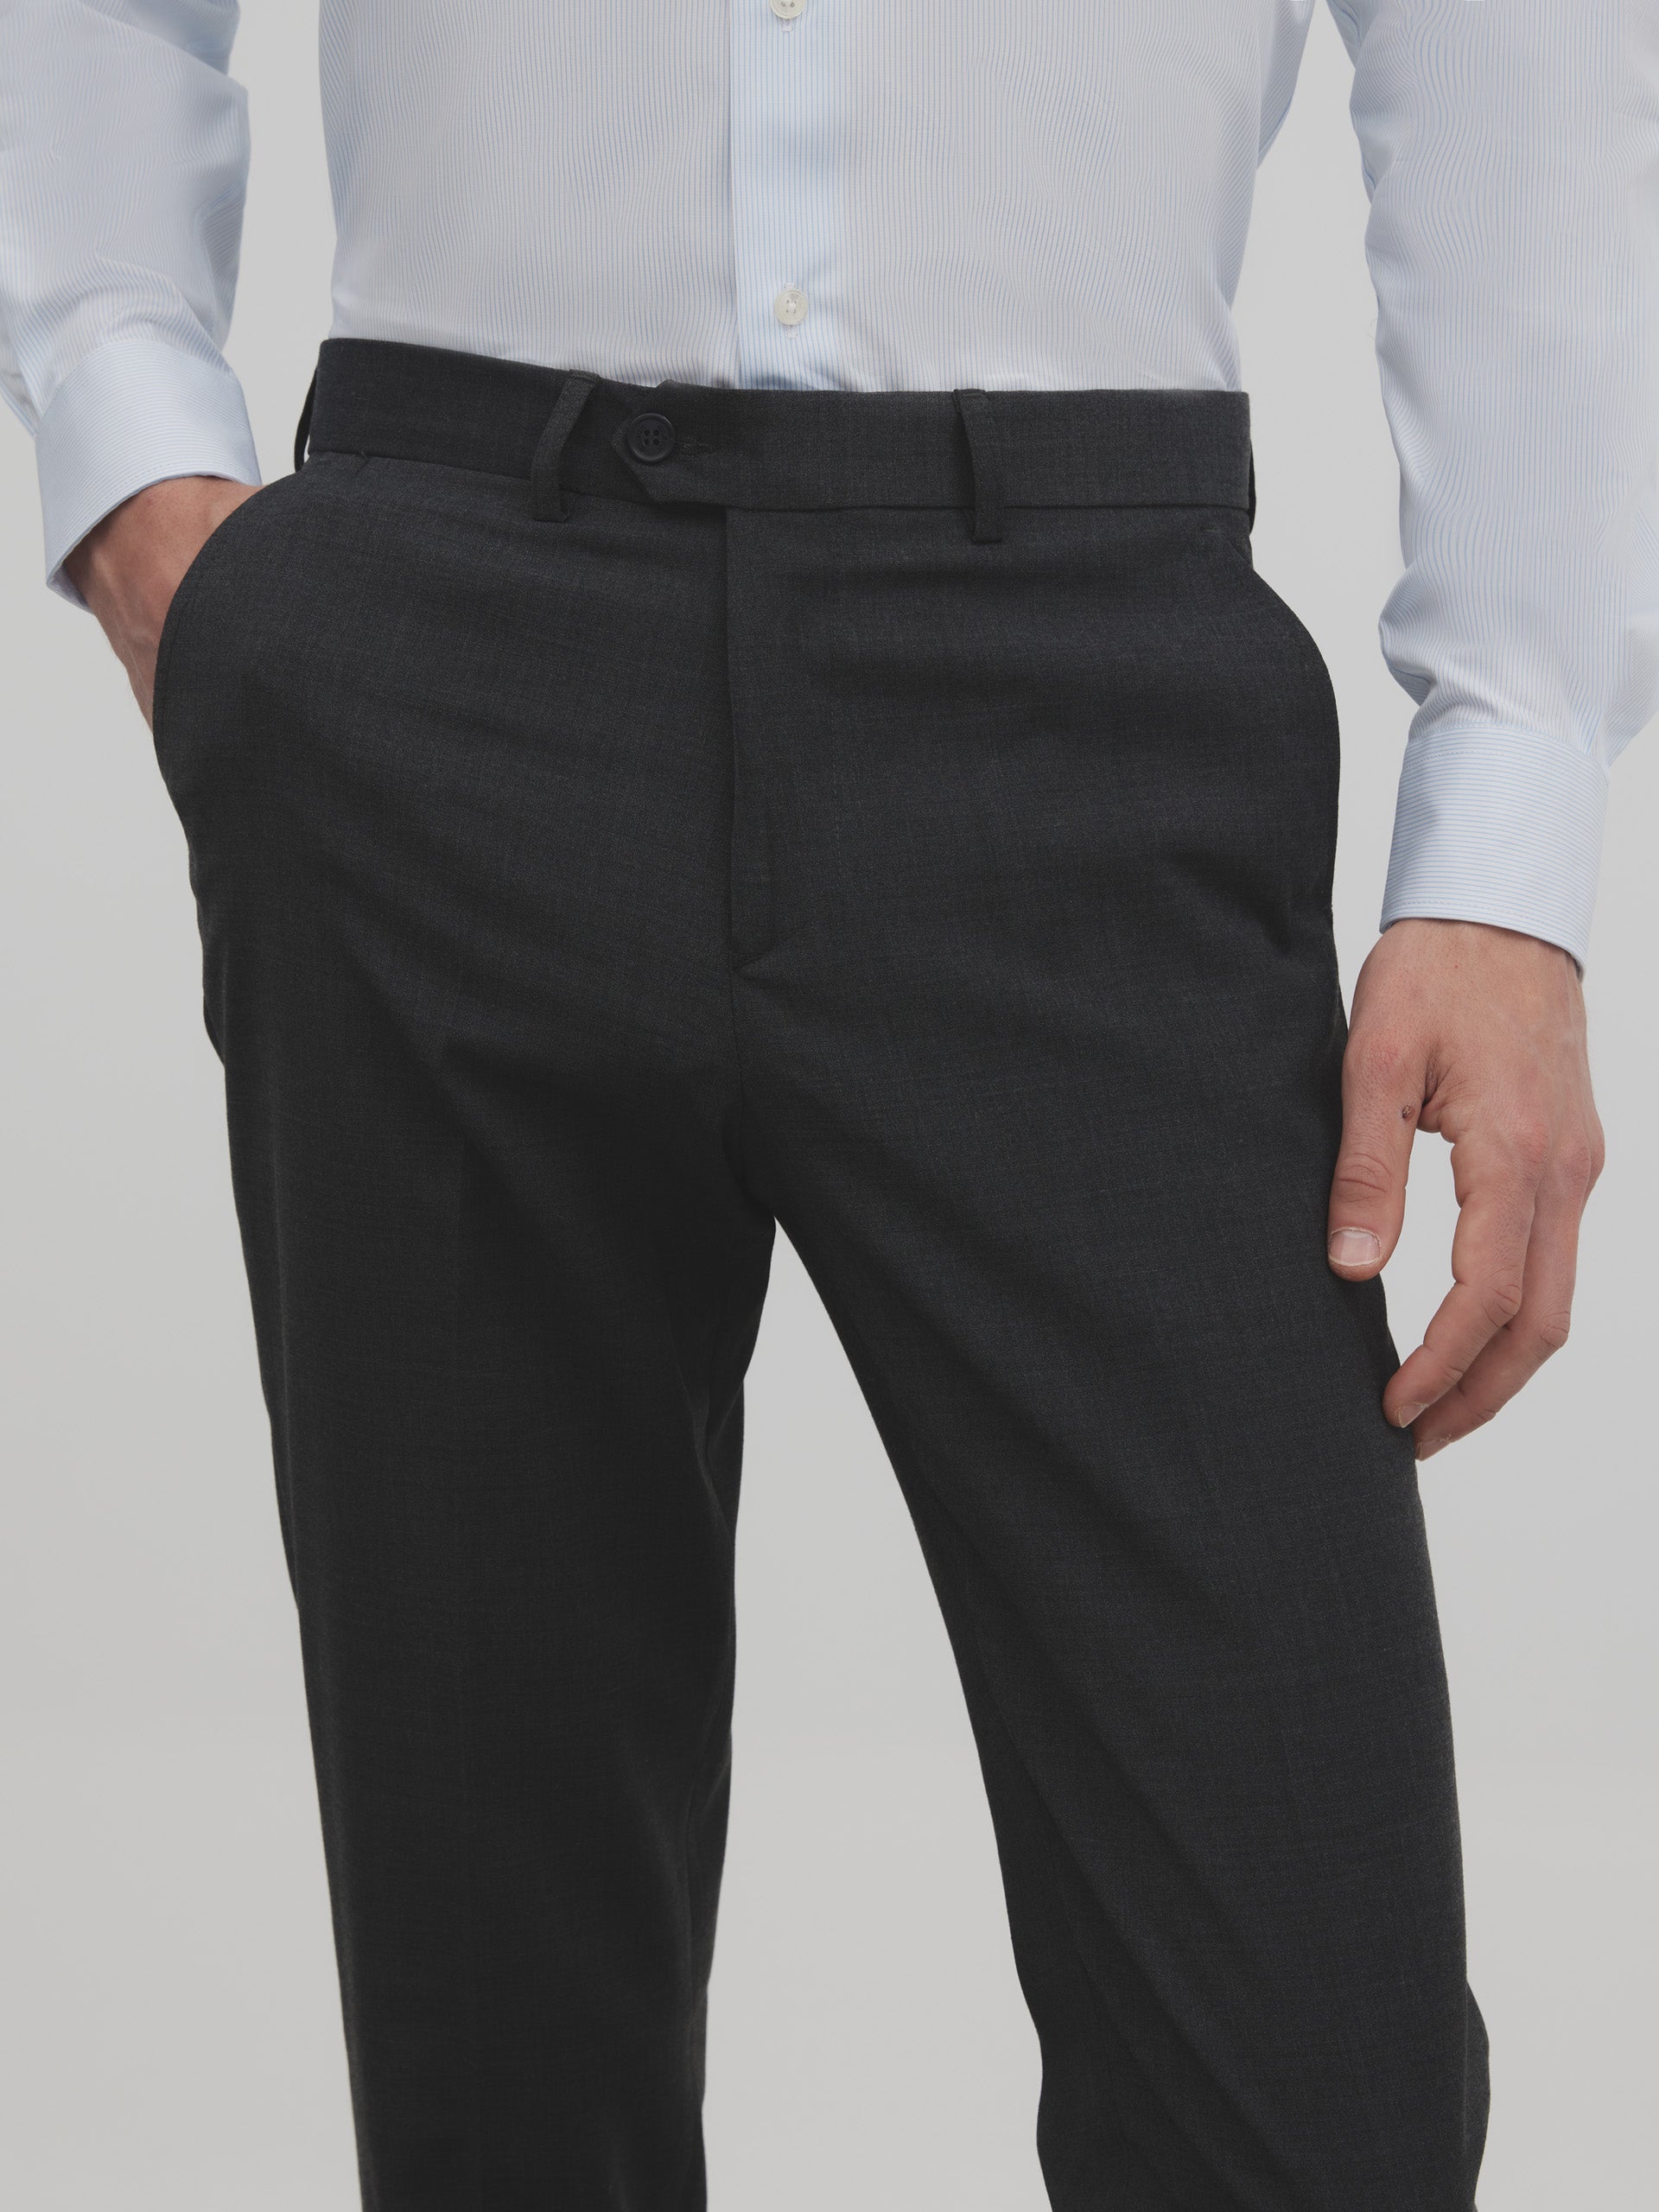 Charcoal gray classic dress pants